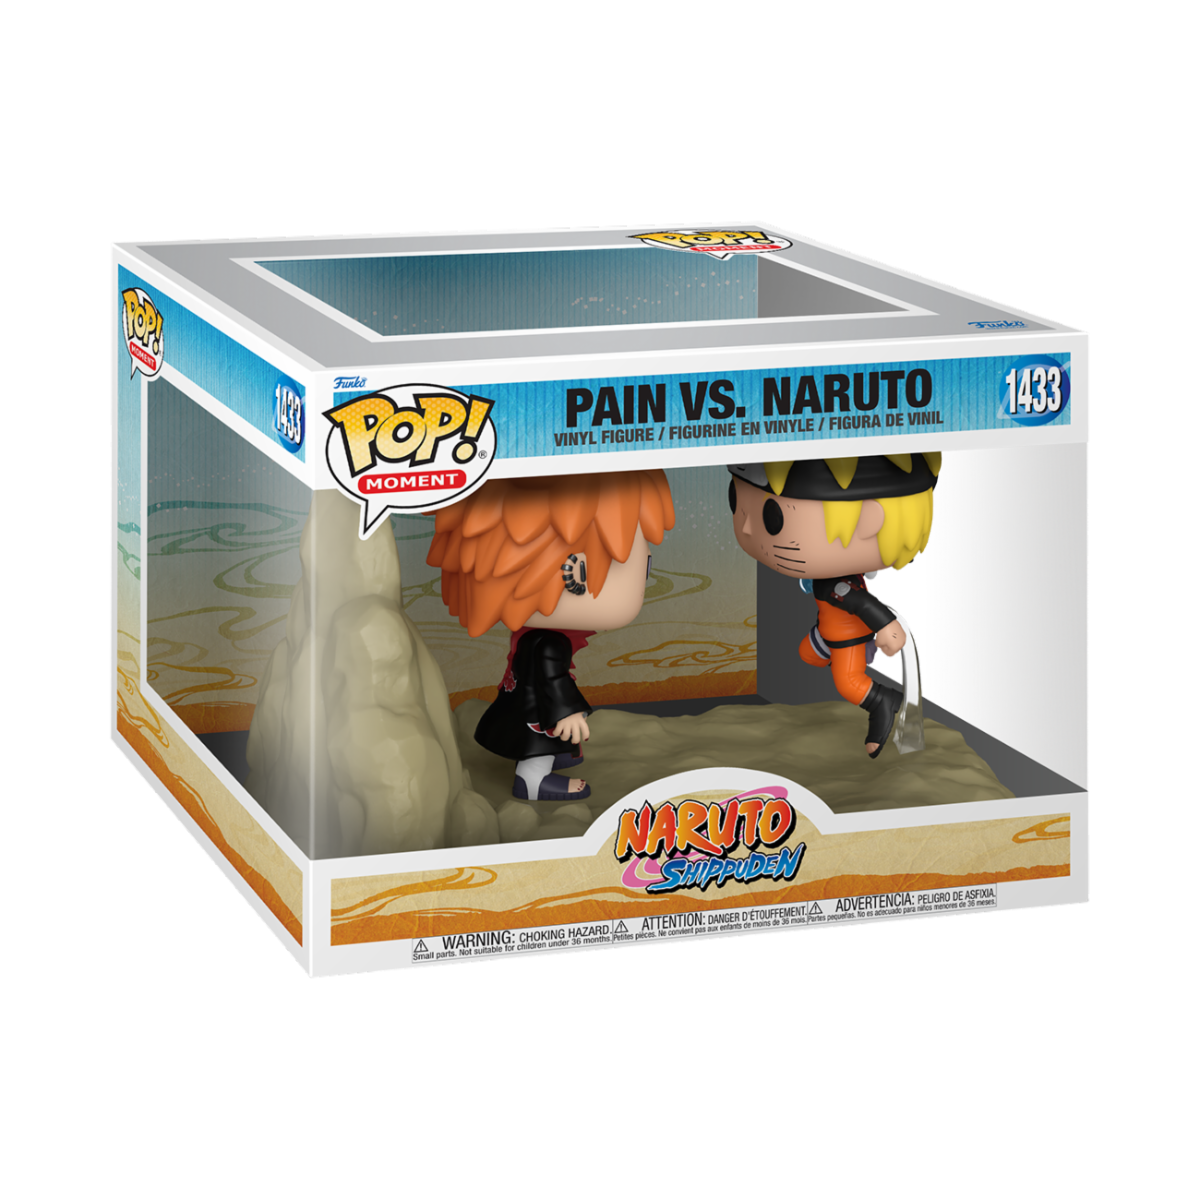 Naruto - POP Moment Pain v Naruto